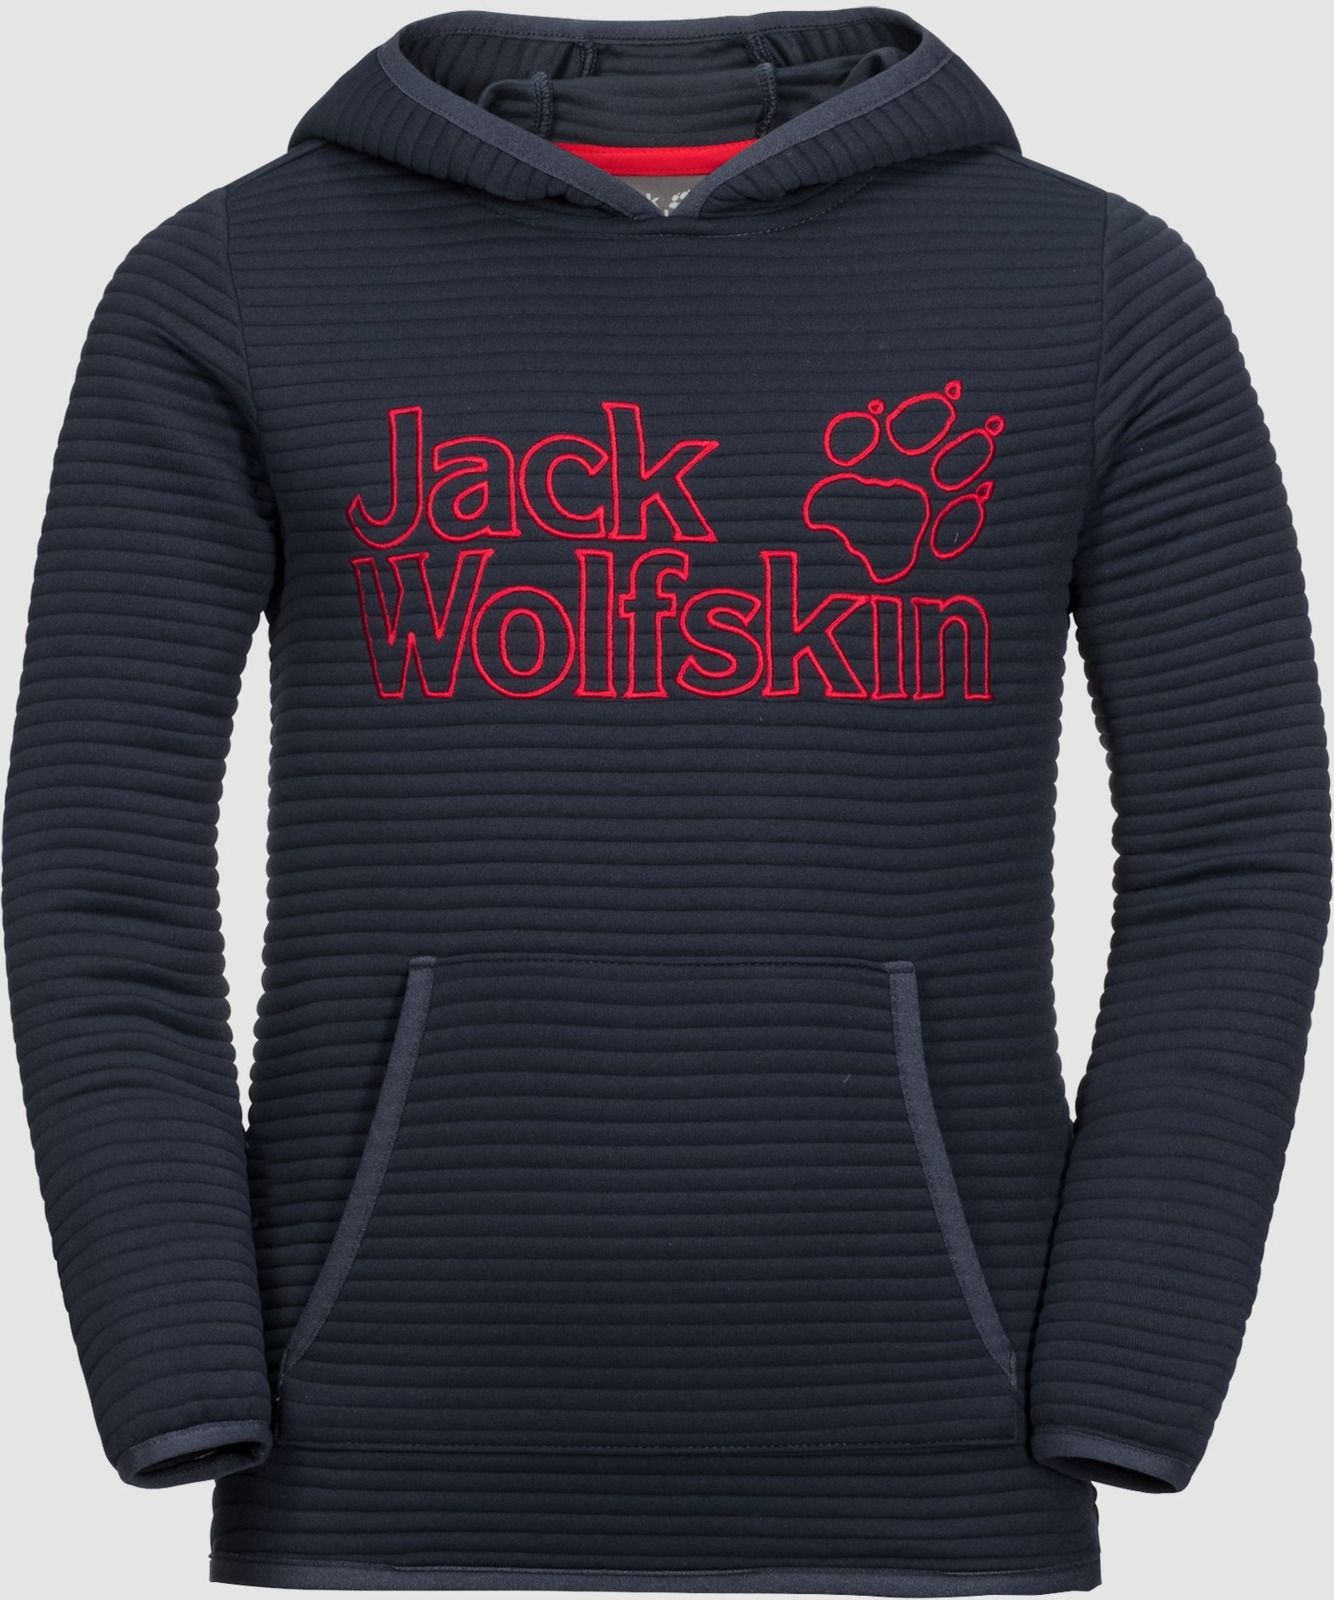   Jack Wolfskin Modesto Hoody, : -. 1607721-1010.  176/182